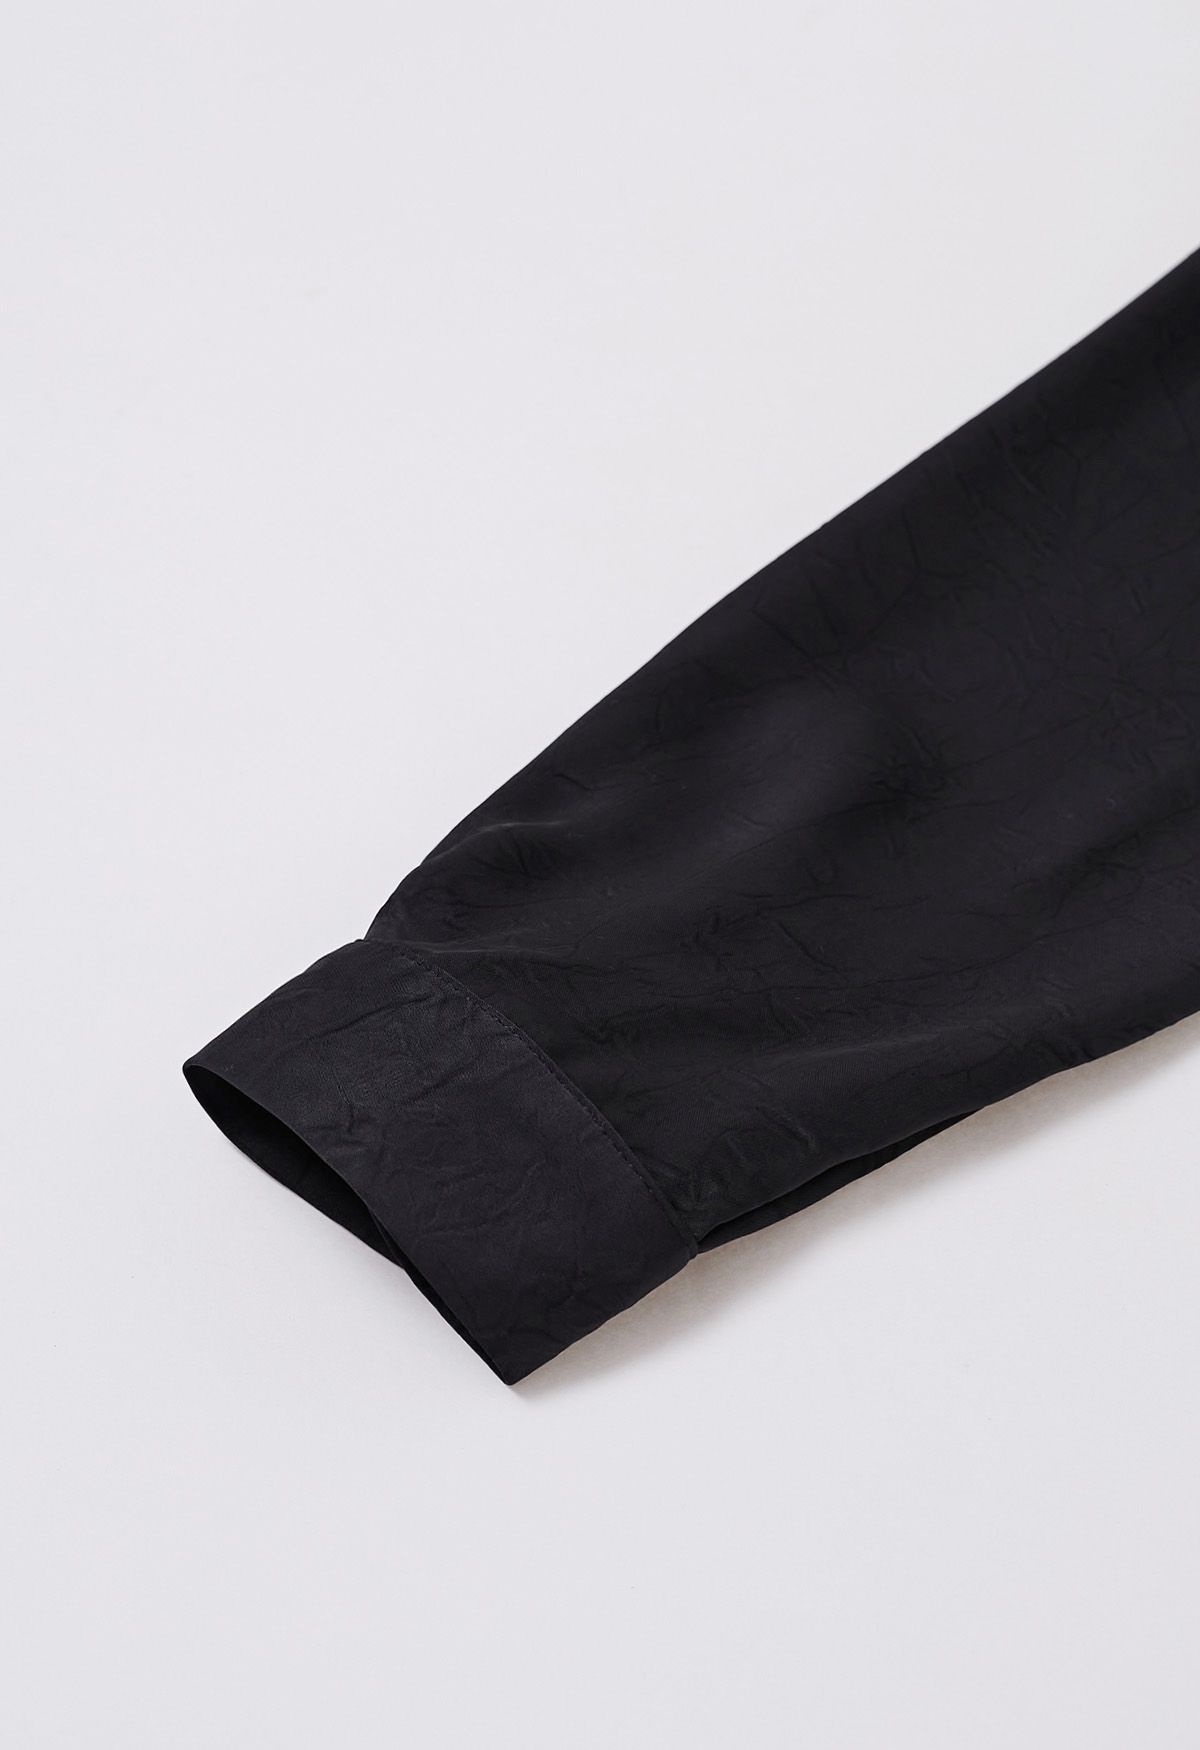 ربطة عنق بأزرار أمامية للخصر باللون الأسود